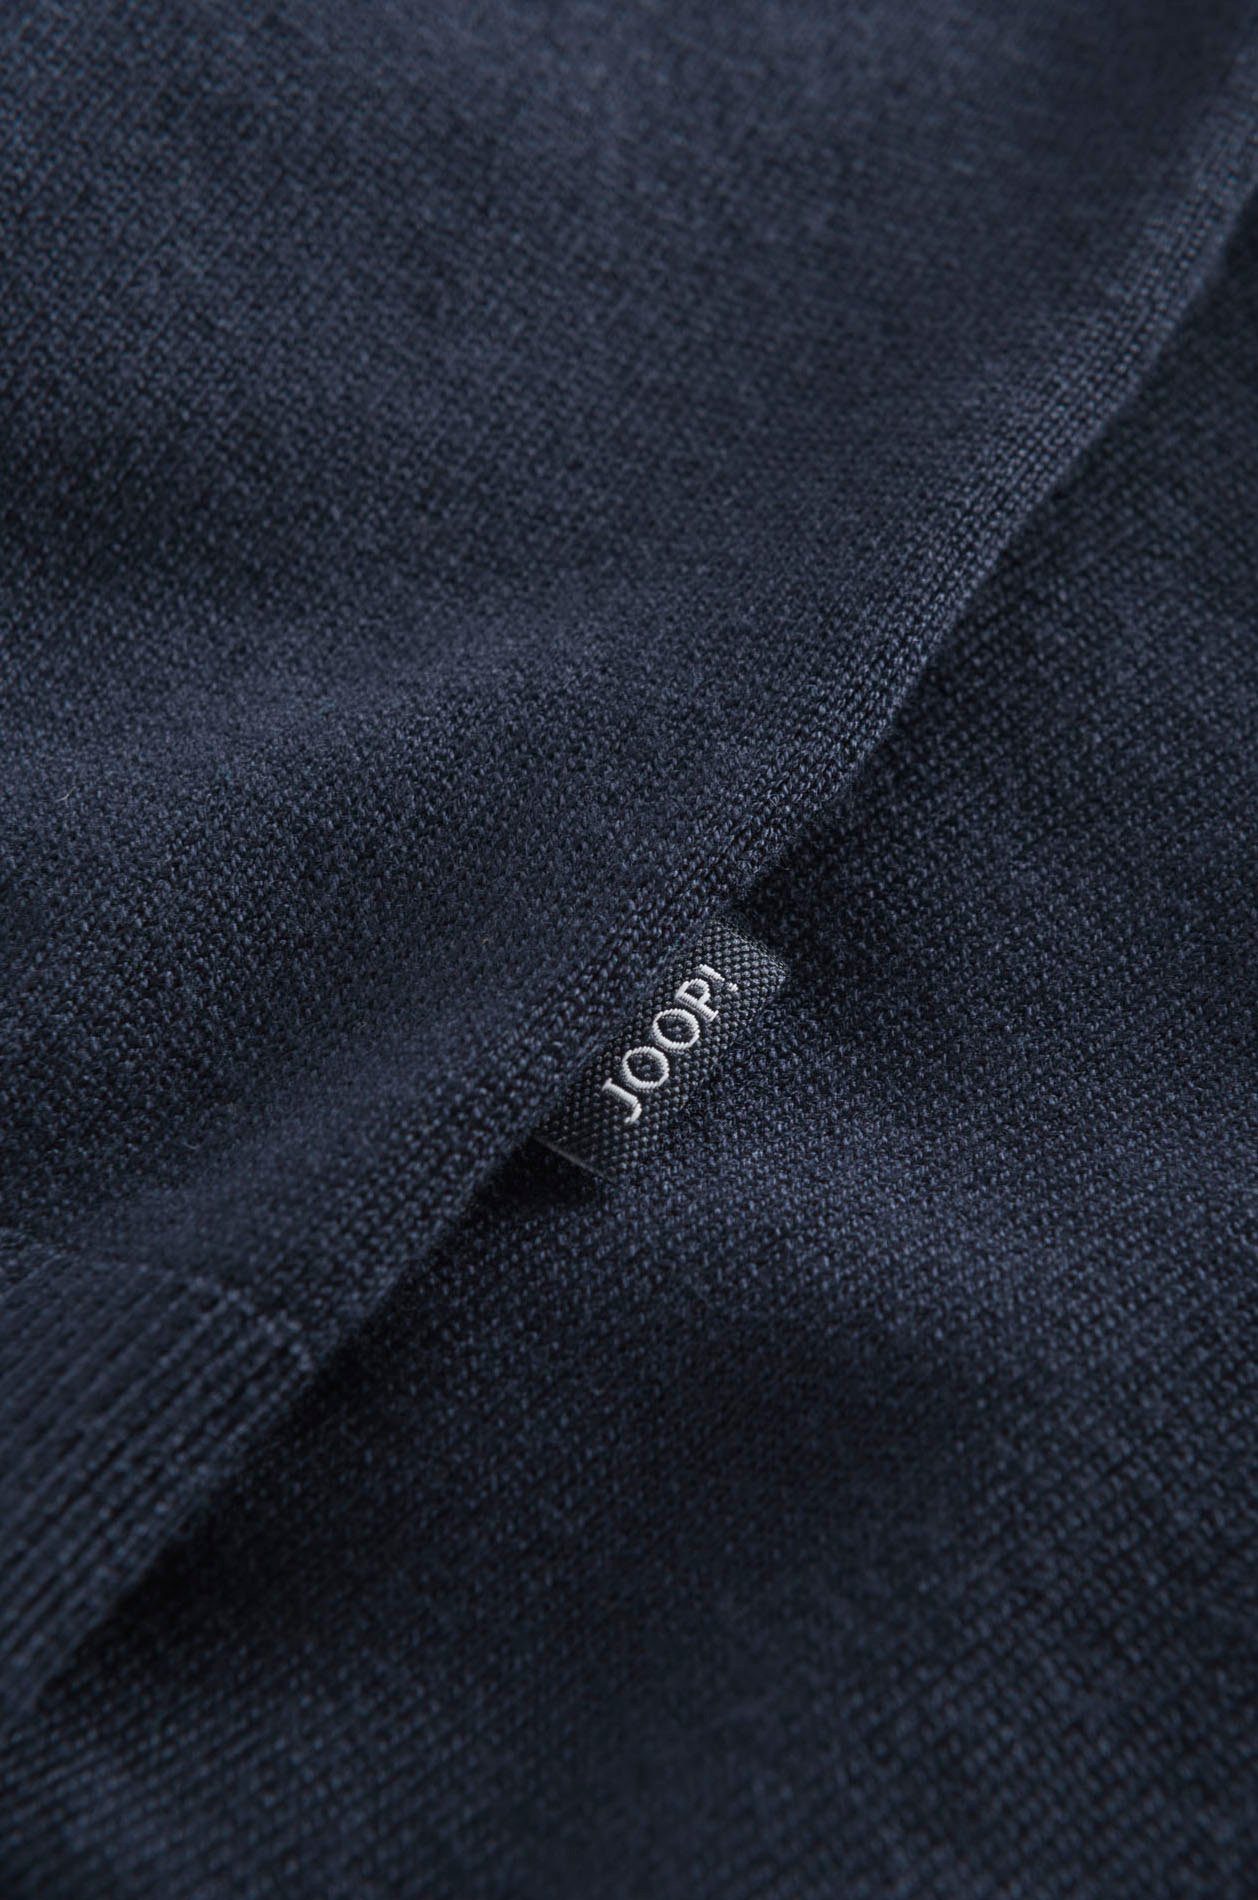 Joop Jeans Kapuzenpullover Belminos mit soften Tunnelzugbändern,  Kontrastfarbener Markenschriftzug innen an der Kapuze